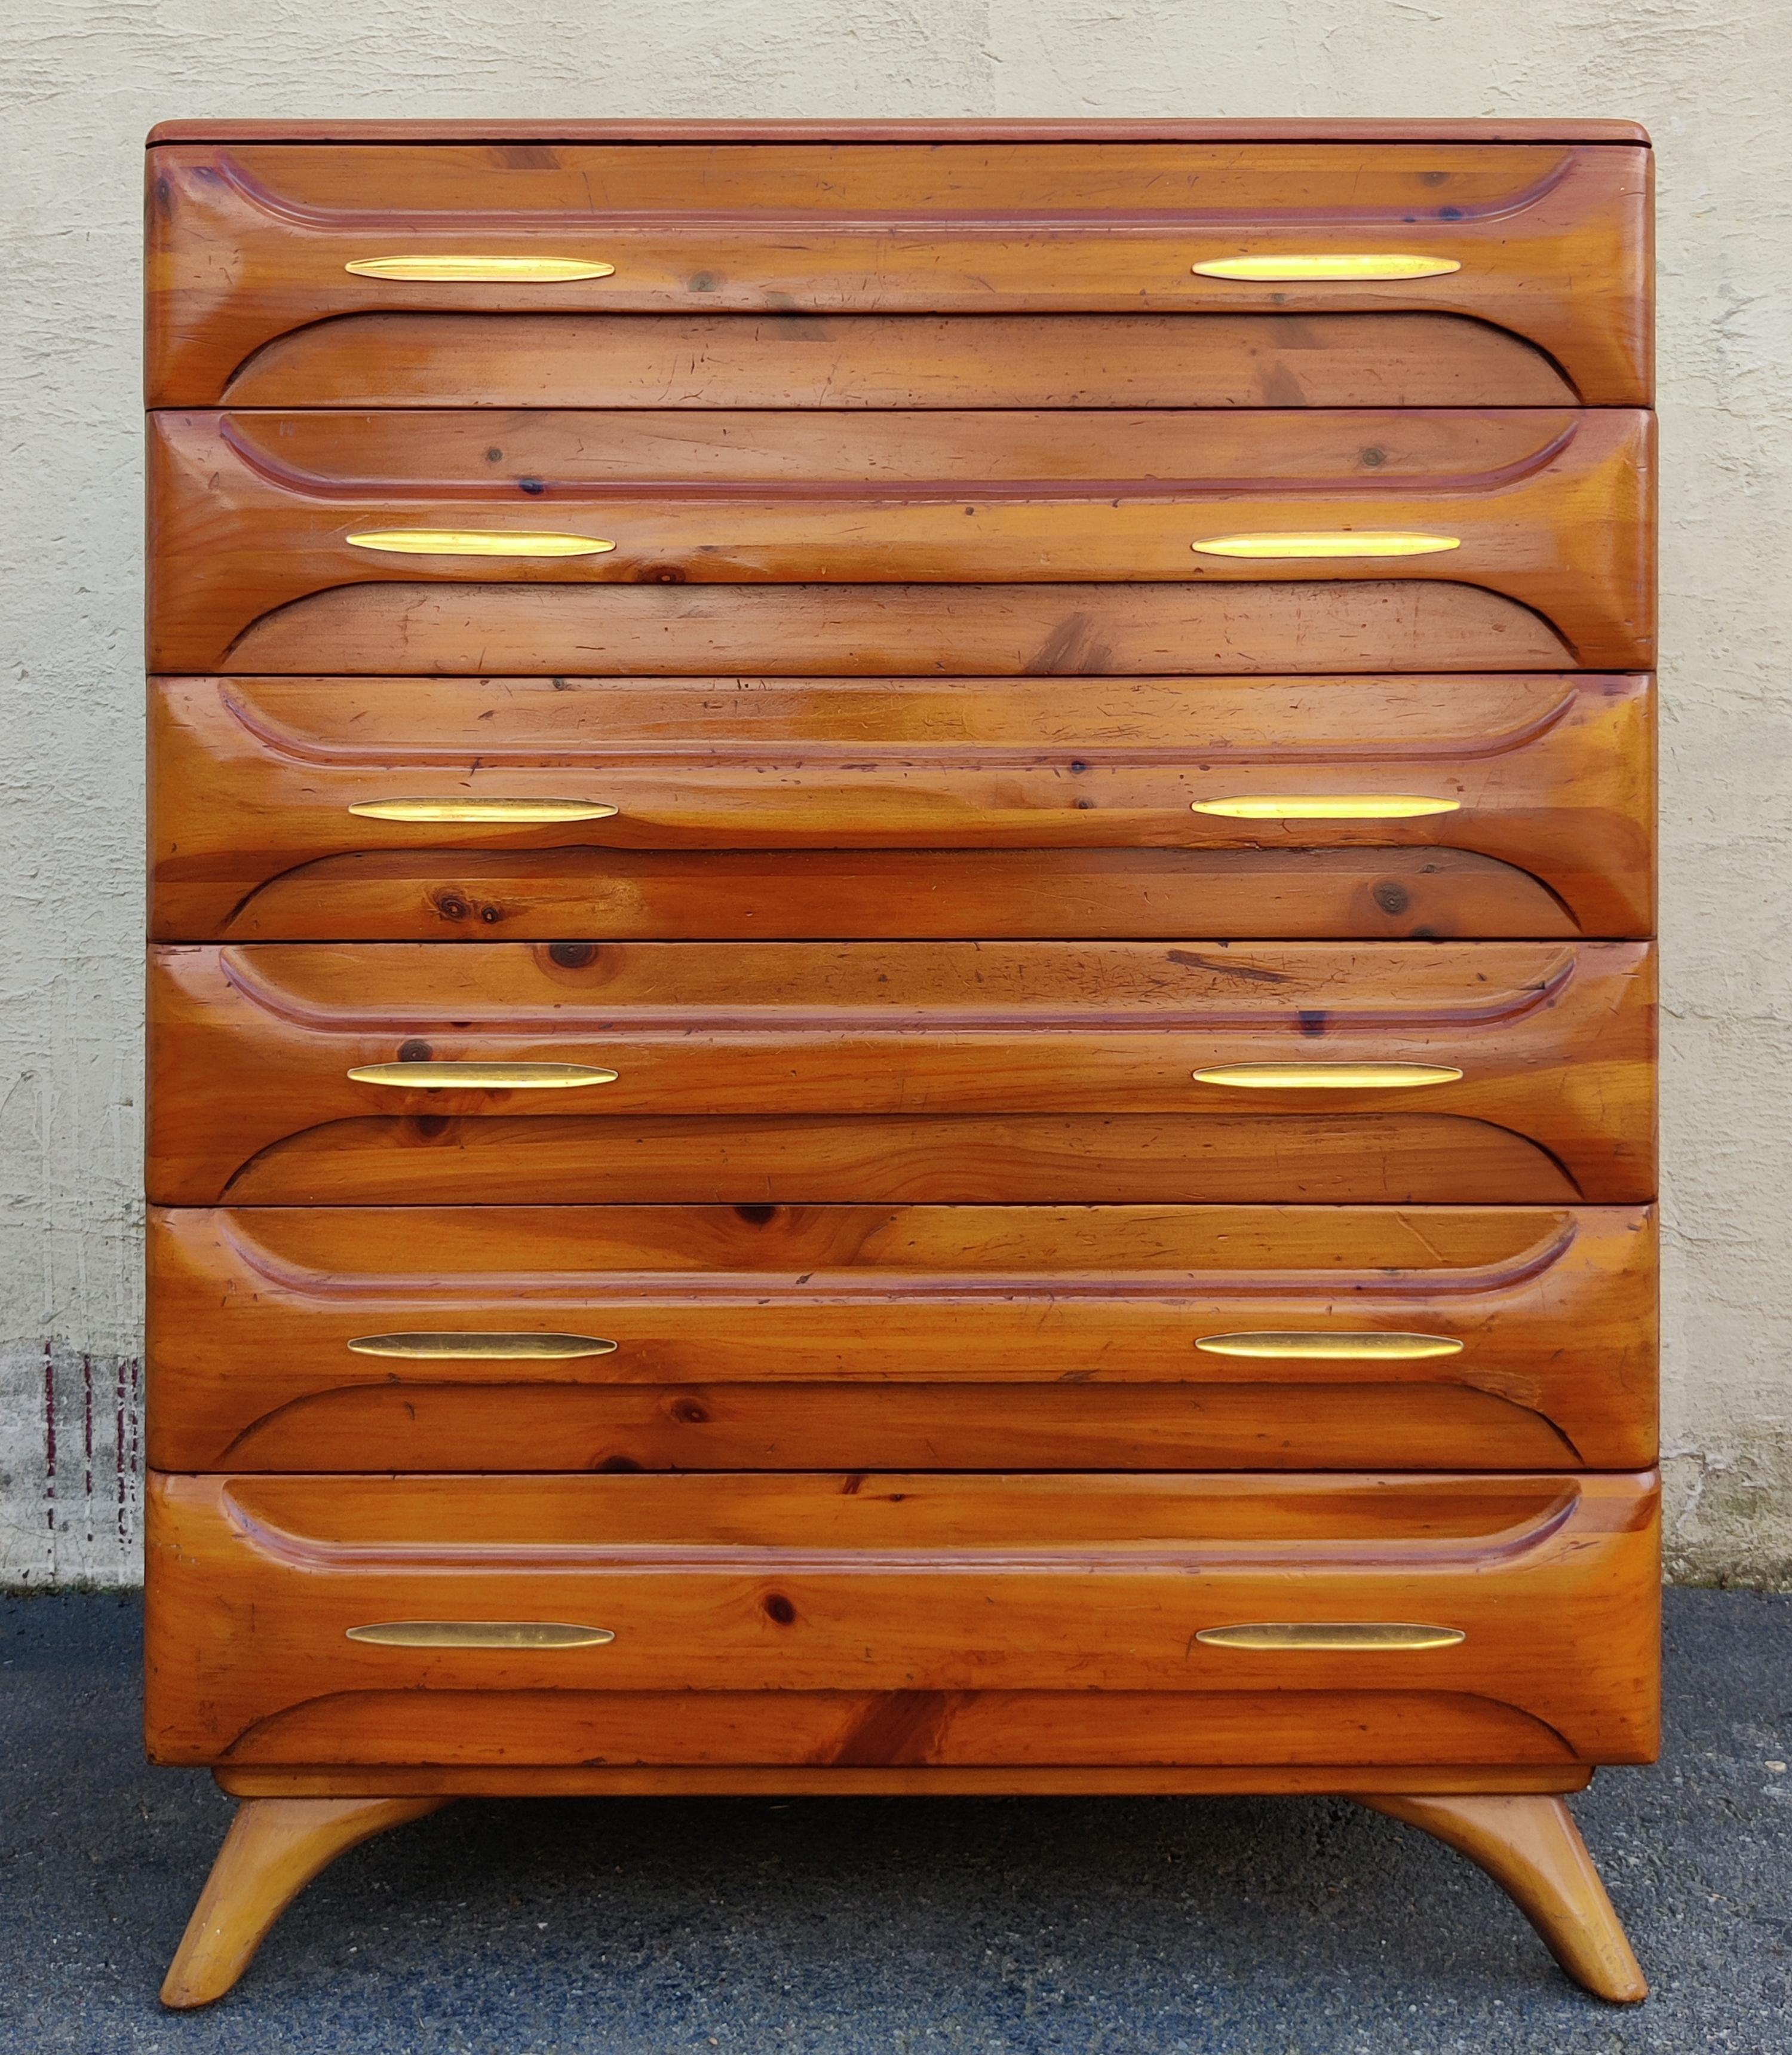 Cette grande commode a été conçue et fabriquée dans les années 1970 par la Franklin Shockey Company pour sa ligne de meubles en pin sculpté. Construite en pin massif, cette commode a une couleur claire et chaude de pin doré avec une finition vernie